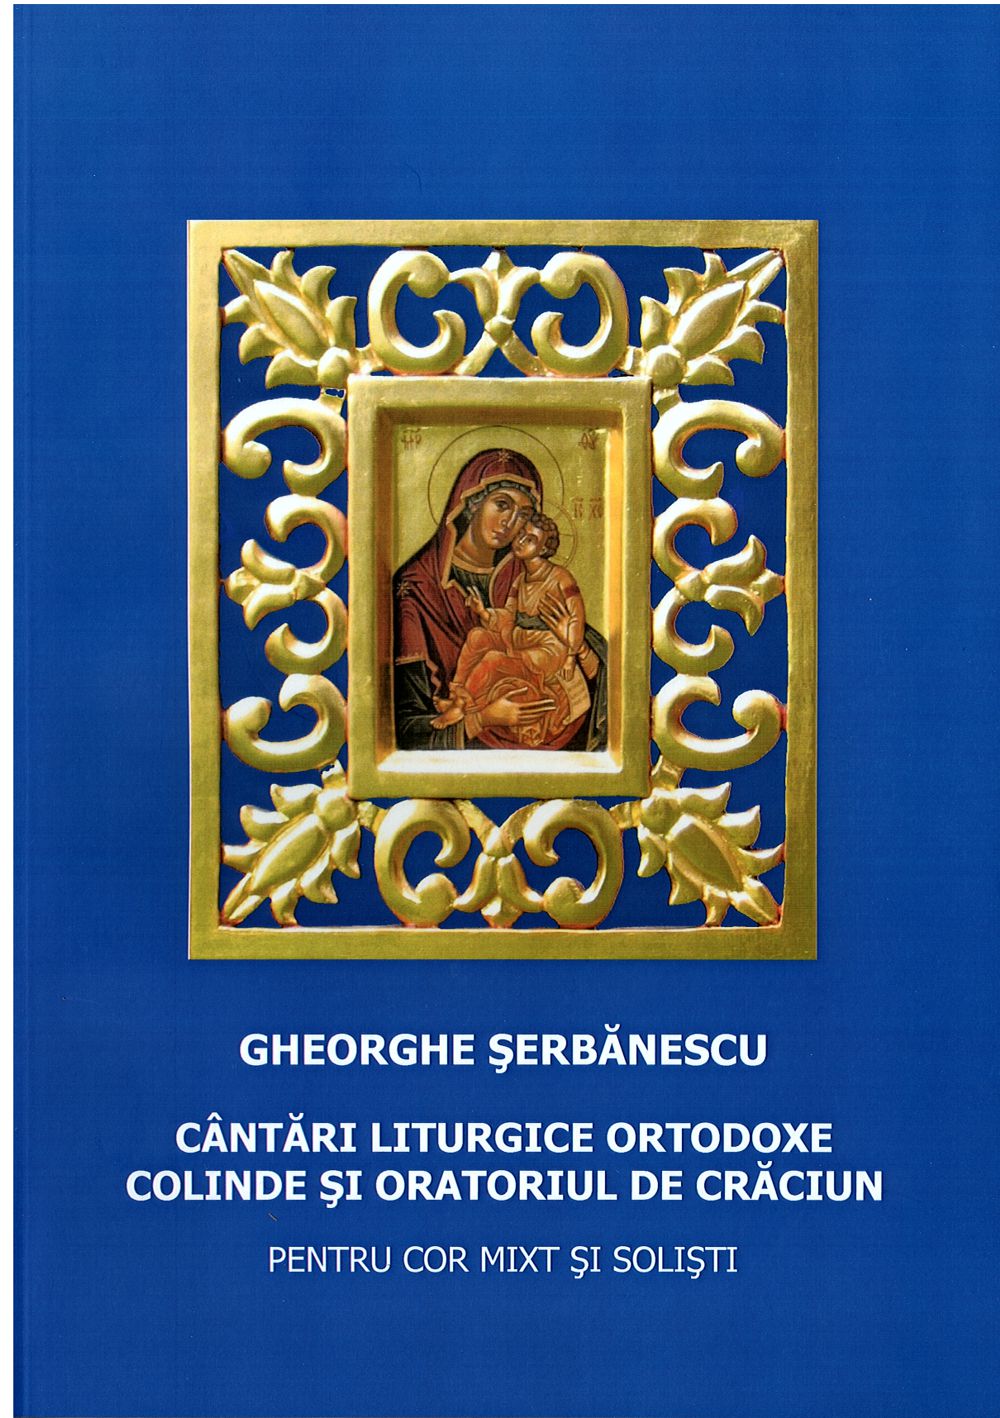 Cantari Liturgice Ortodoxe. Colinde si oratoriul de Craciun - Gheorghe Serbanescu